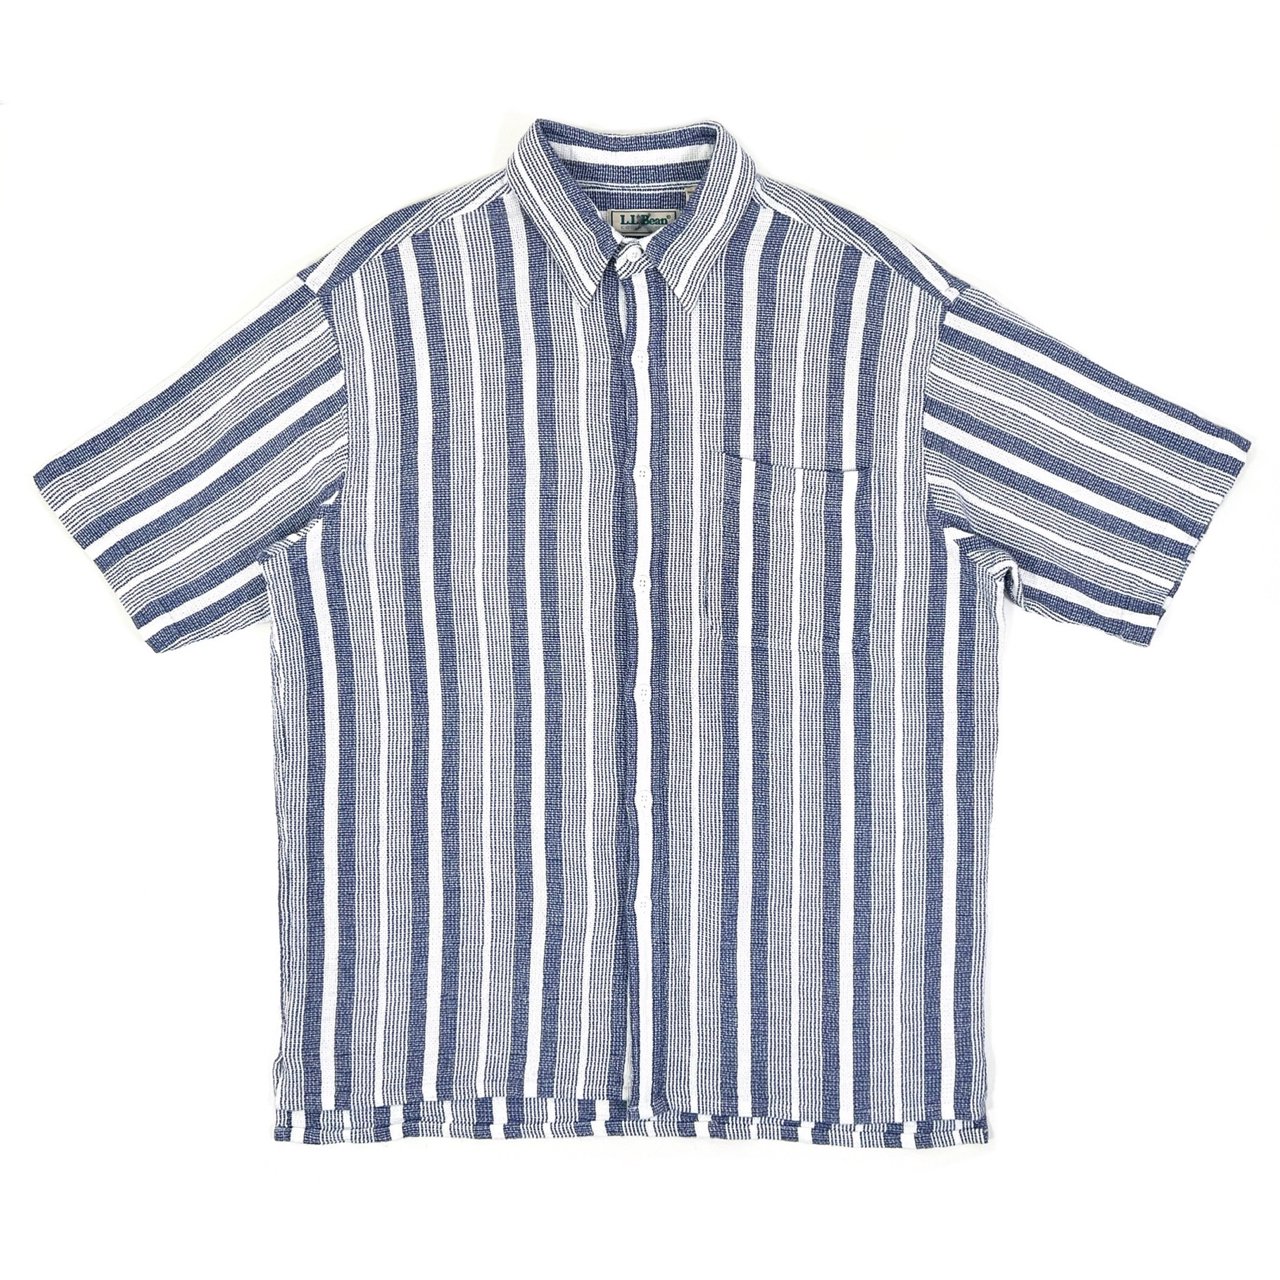 1990s L.L.Bean COOL WEAVE S/S Cotton shirts M